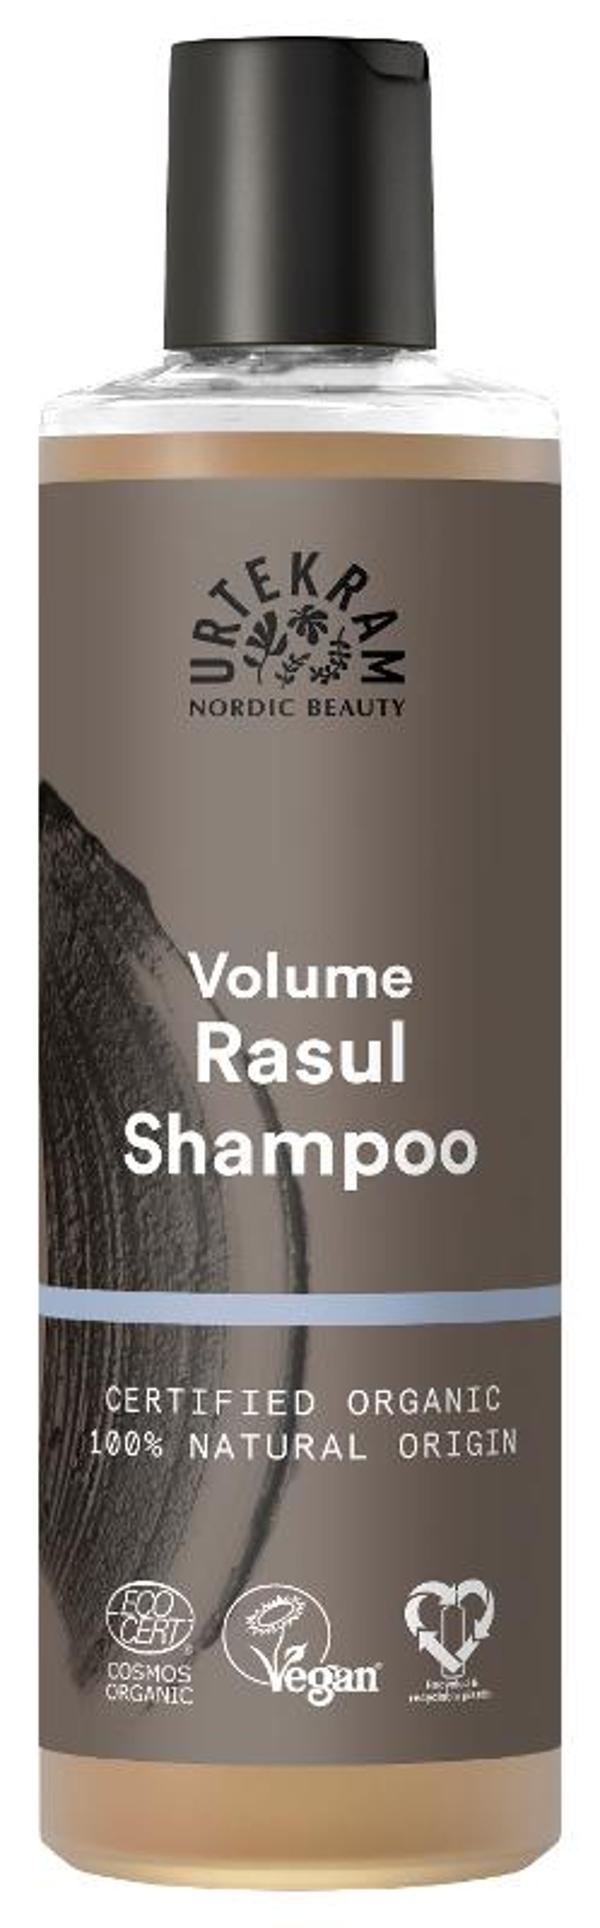 Produktfoto zu Rasul Shampoo für voluminöses Haar